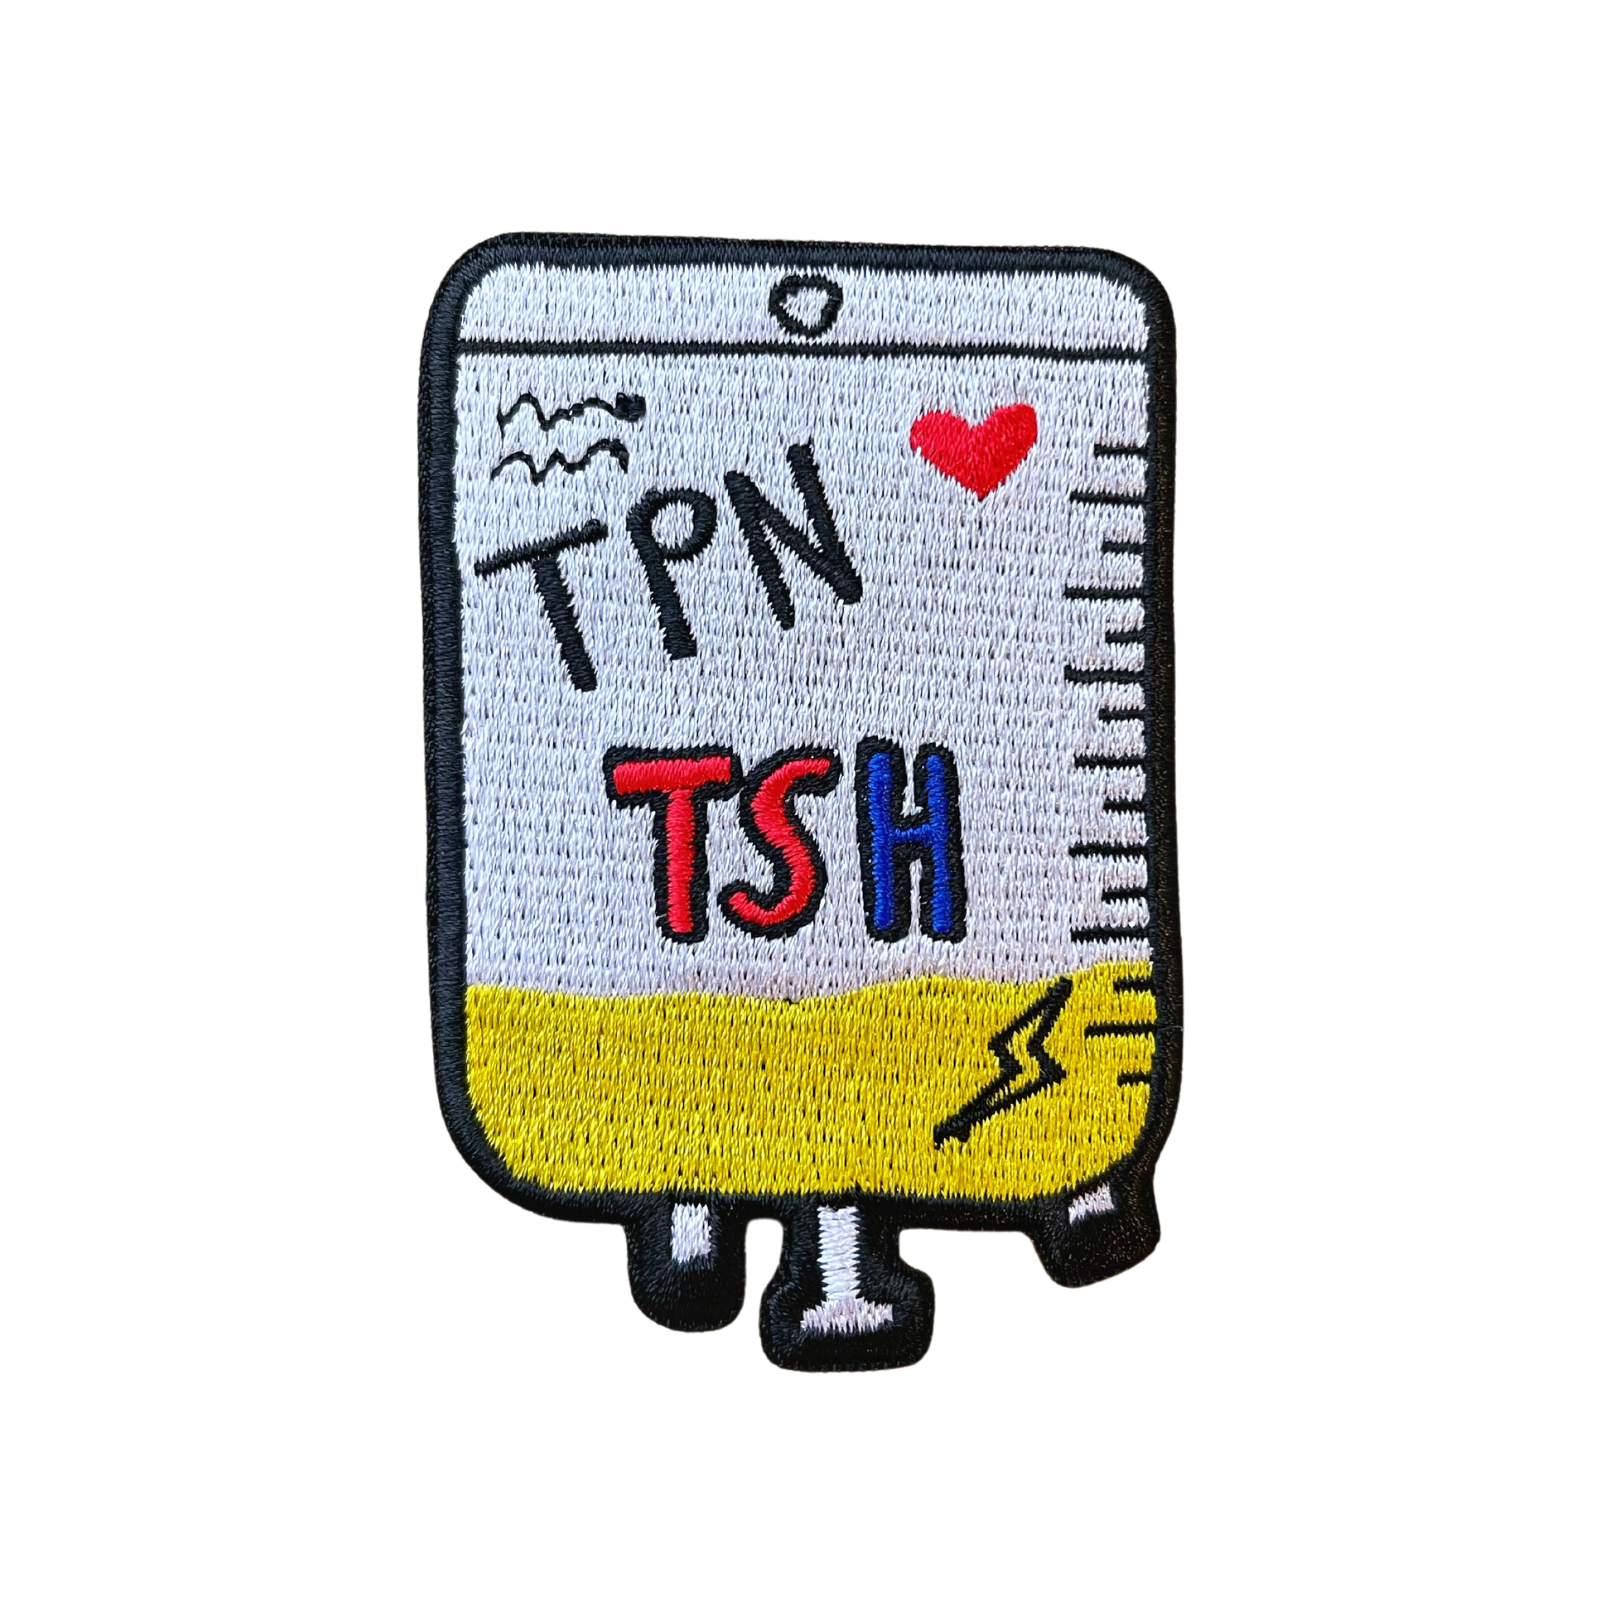 TPN Patch - TinySuperheroes